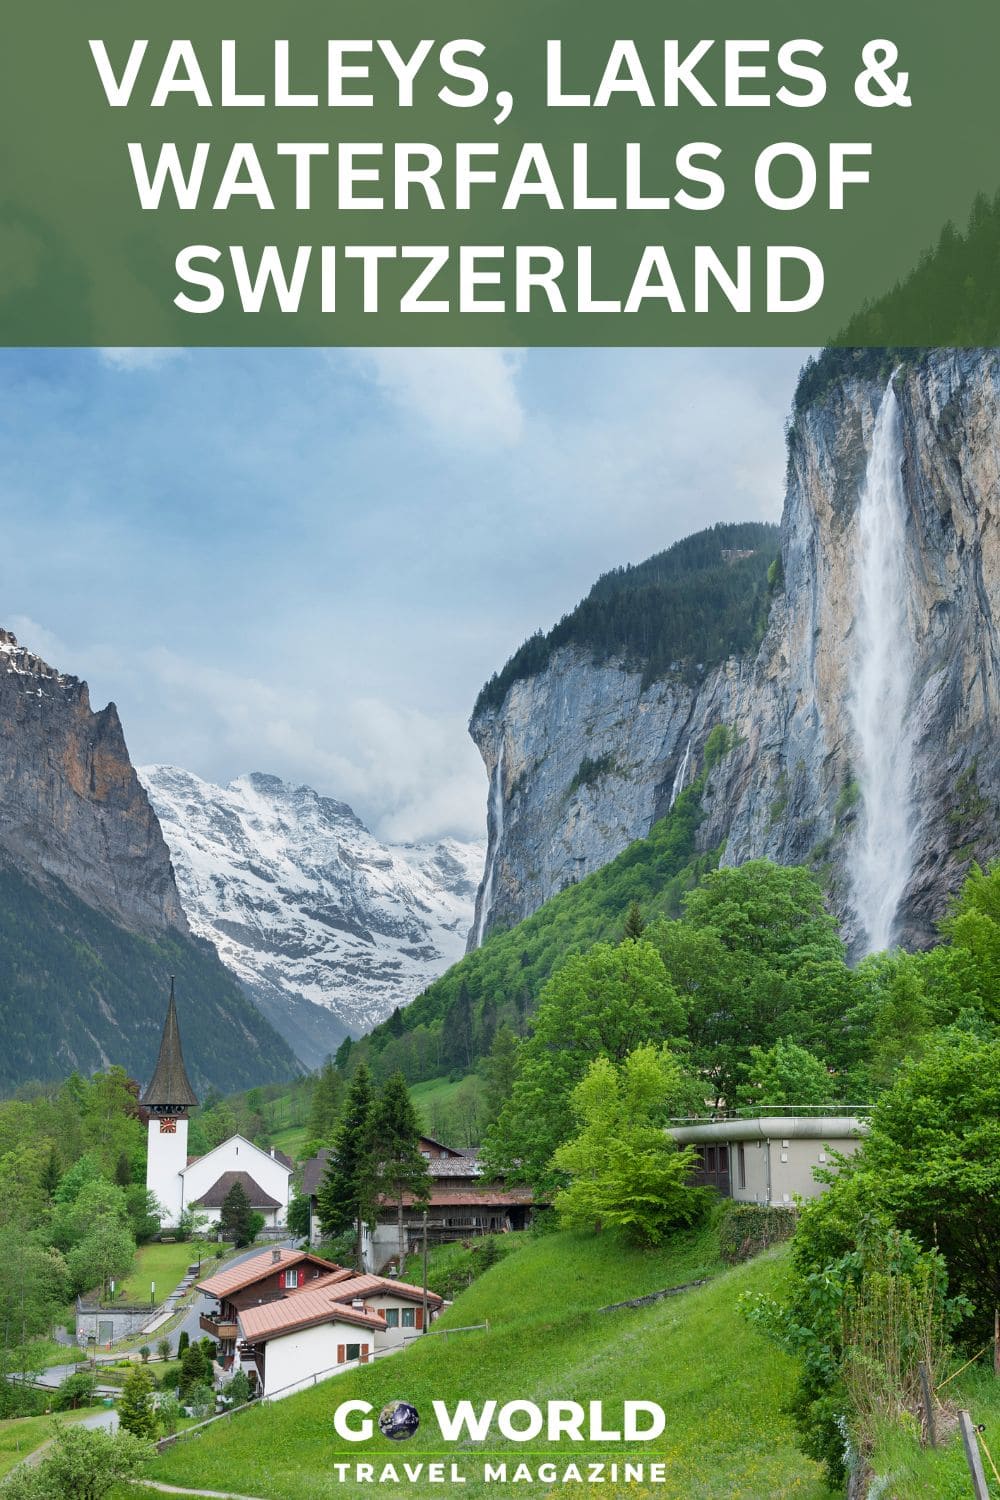 Melihat keindahan alam dan air terjun di Swiss yang mengilhami Lord of the Rings karya Tolkien serta karya seni dan film ikonik lainnya.  #switzerland #waterfallsinswitzerland